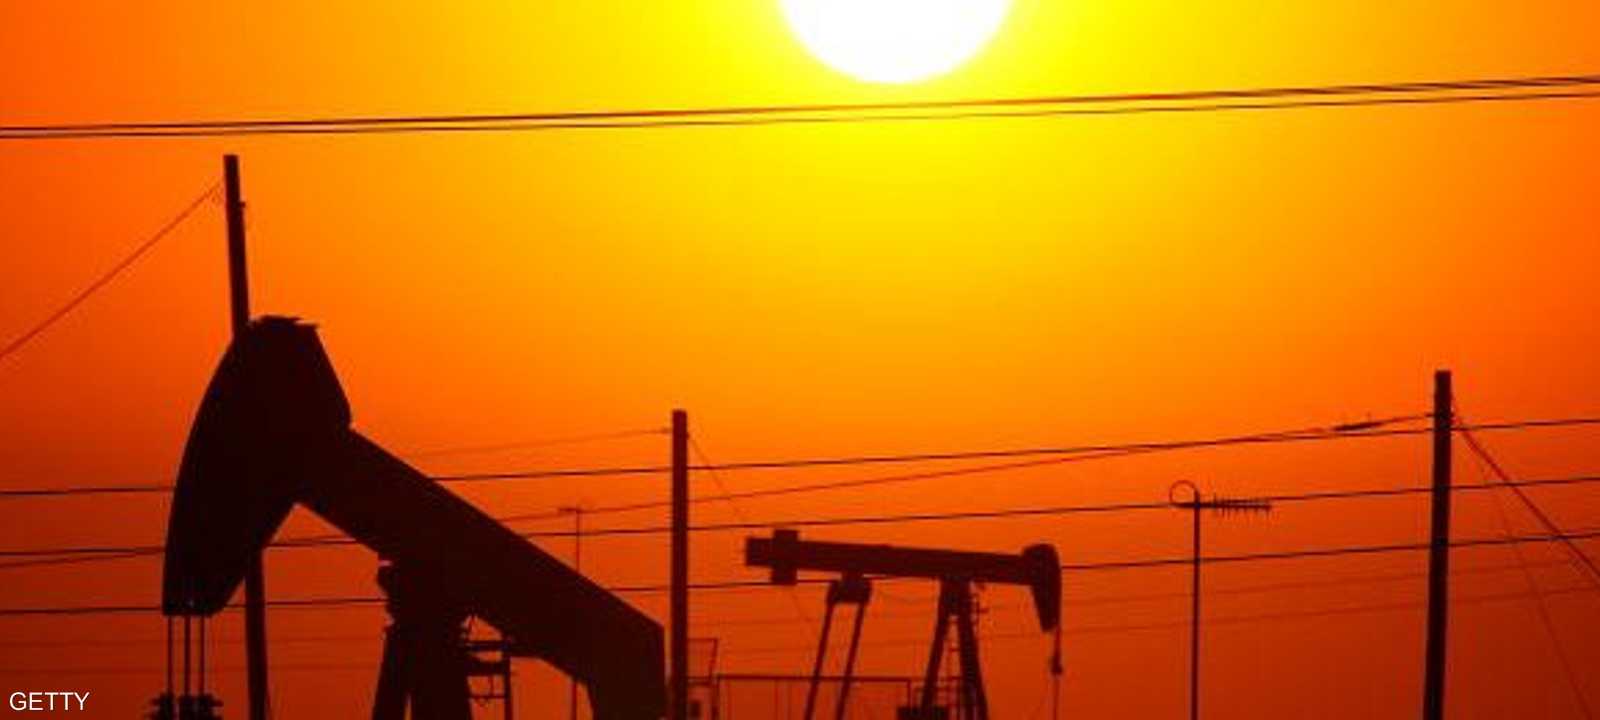 التقرير قلص من خسائر أسعار النفط